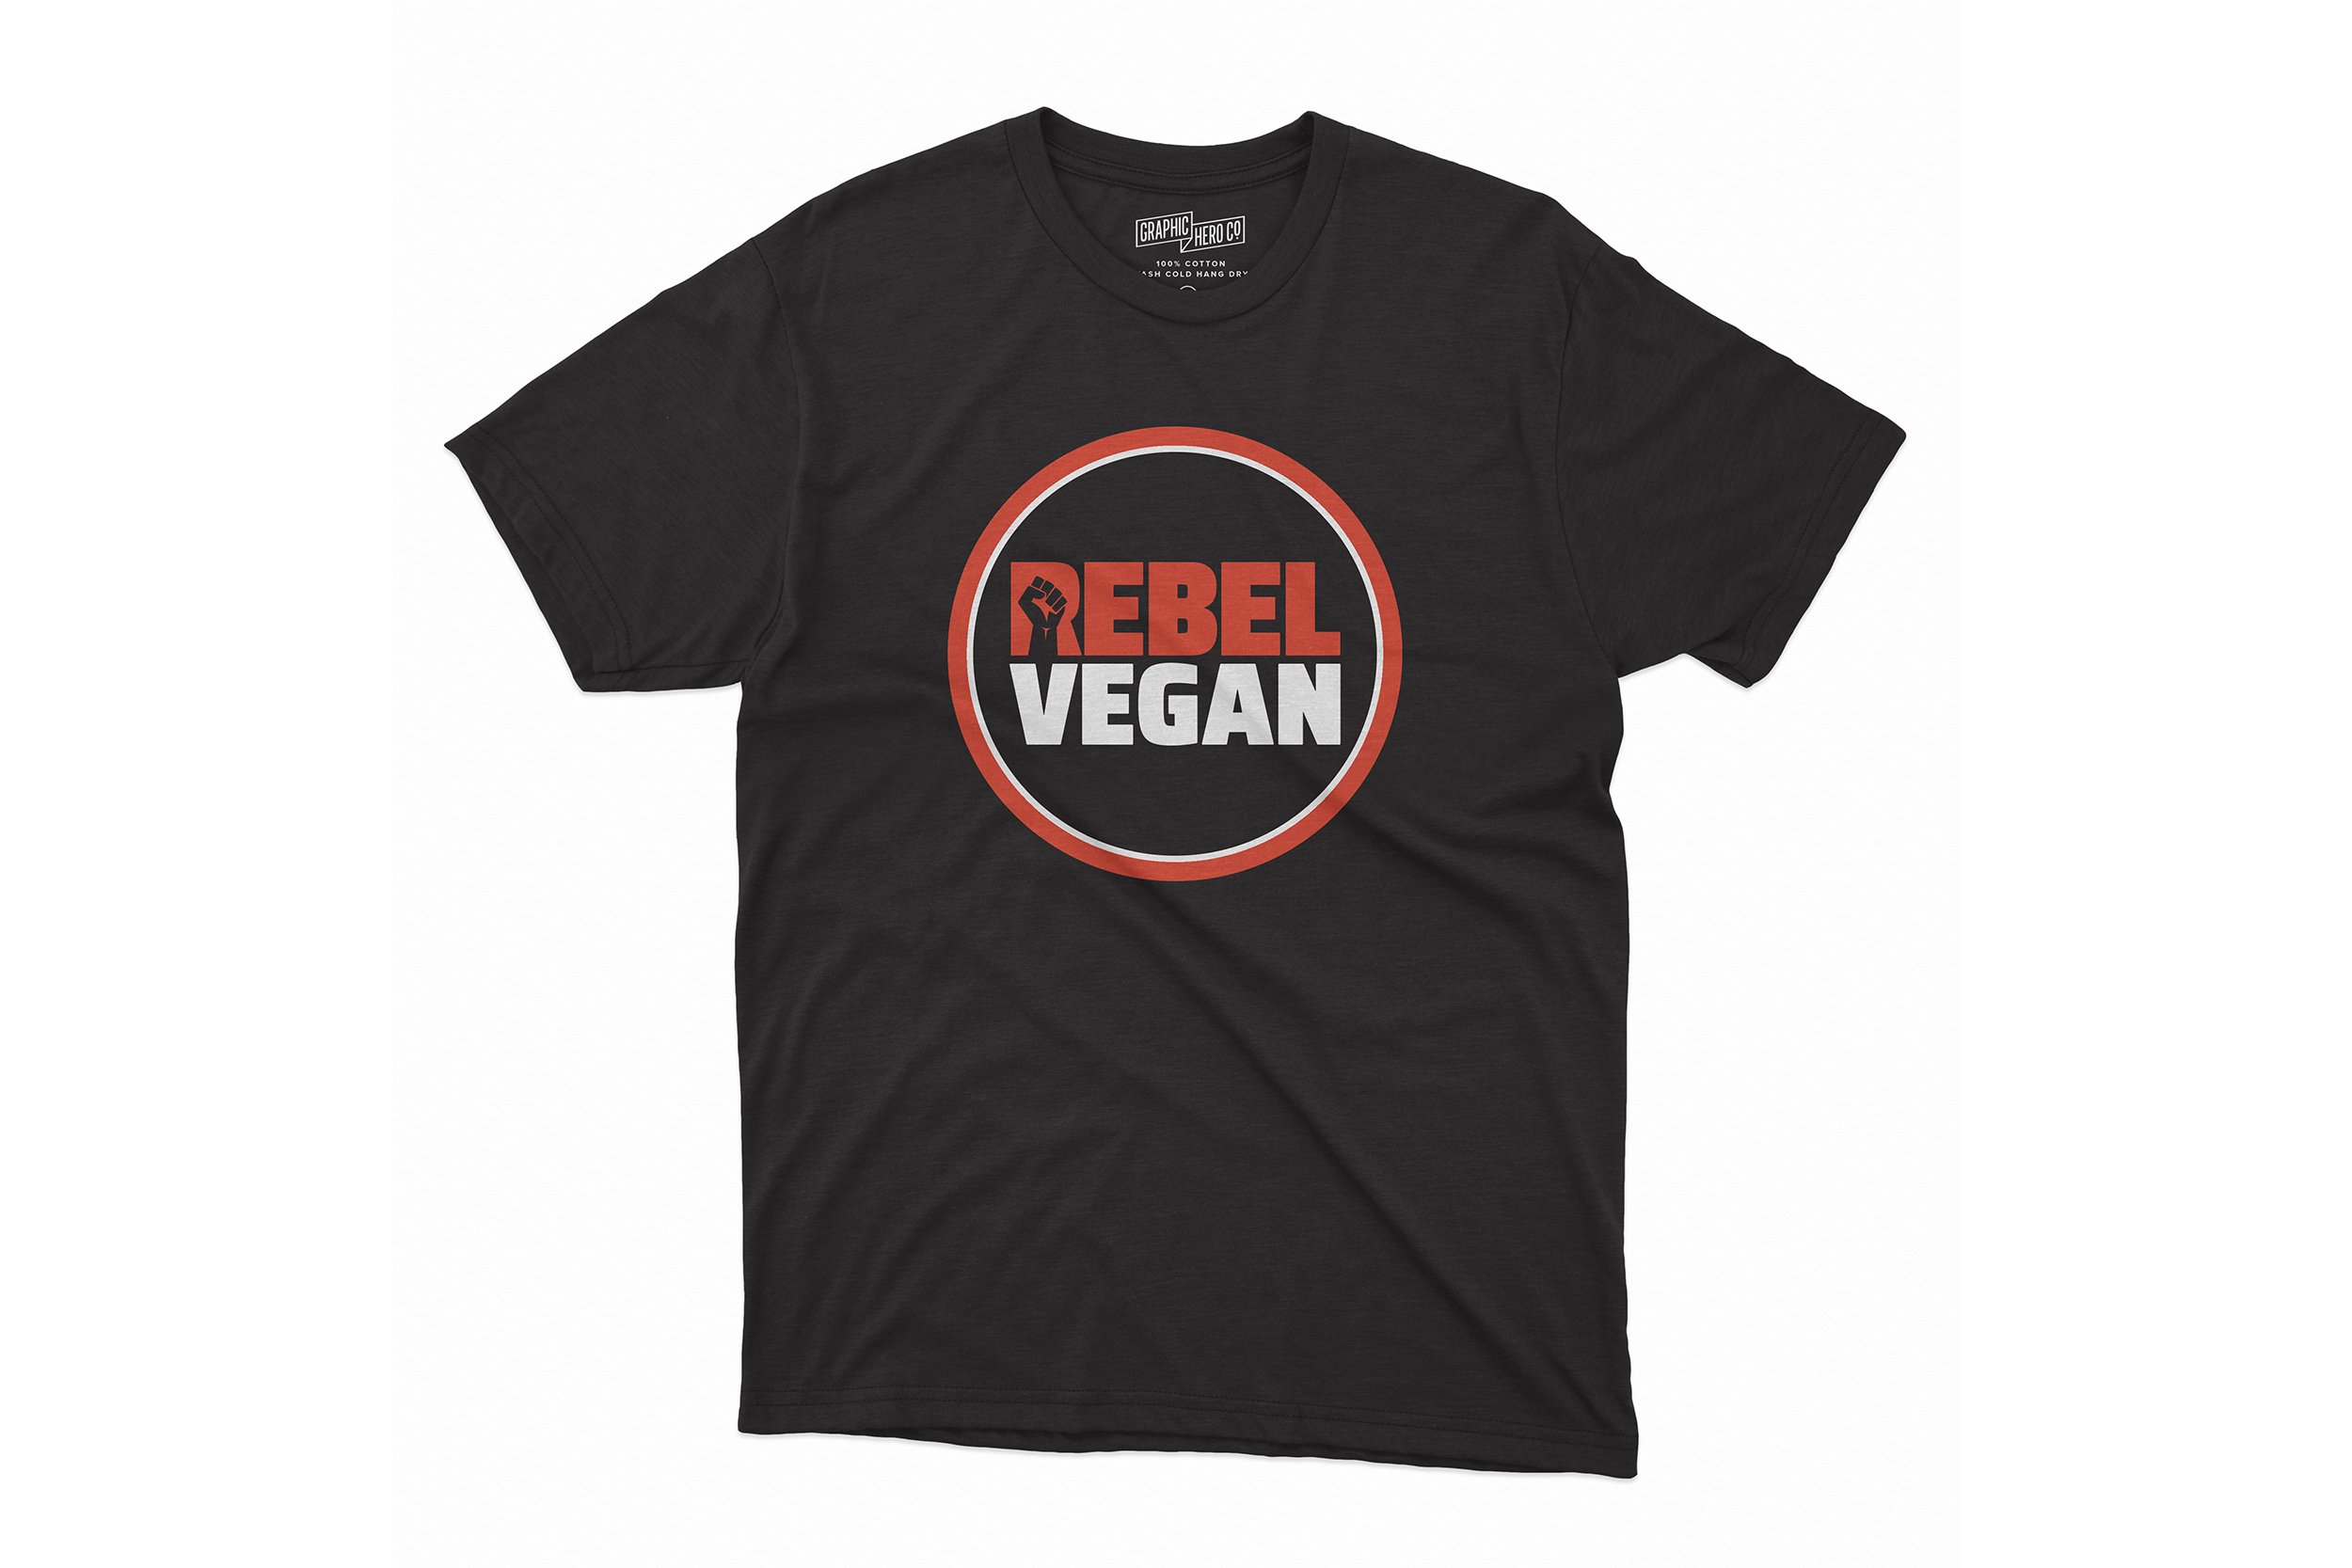 Rebel Vegan Life t-shirt (grey or black)